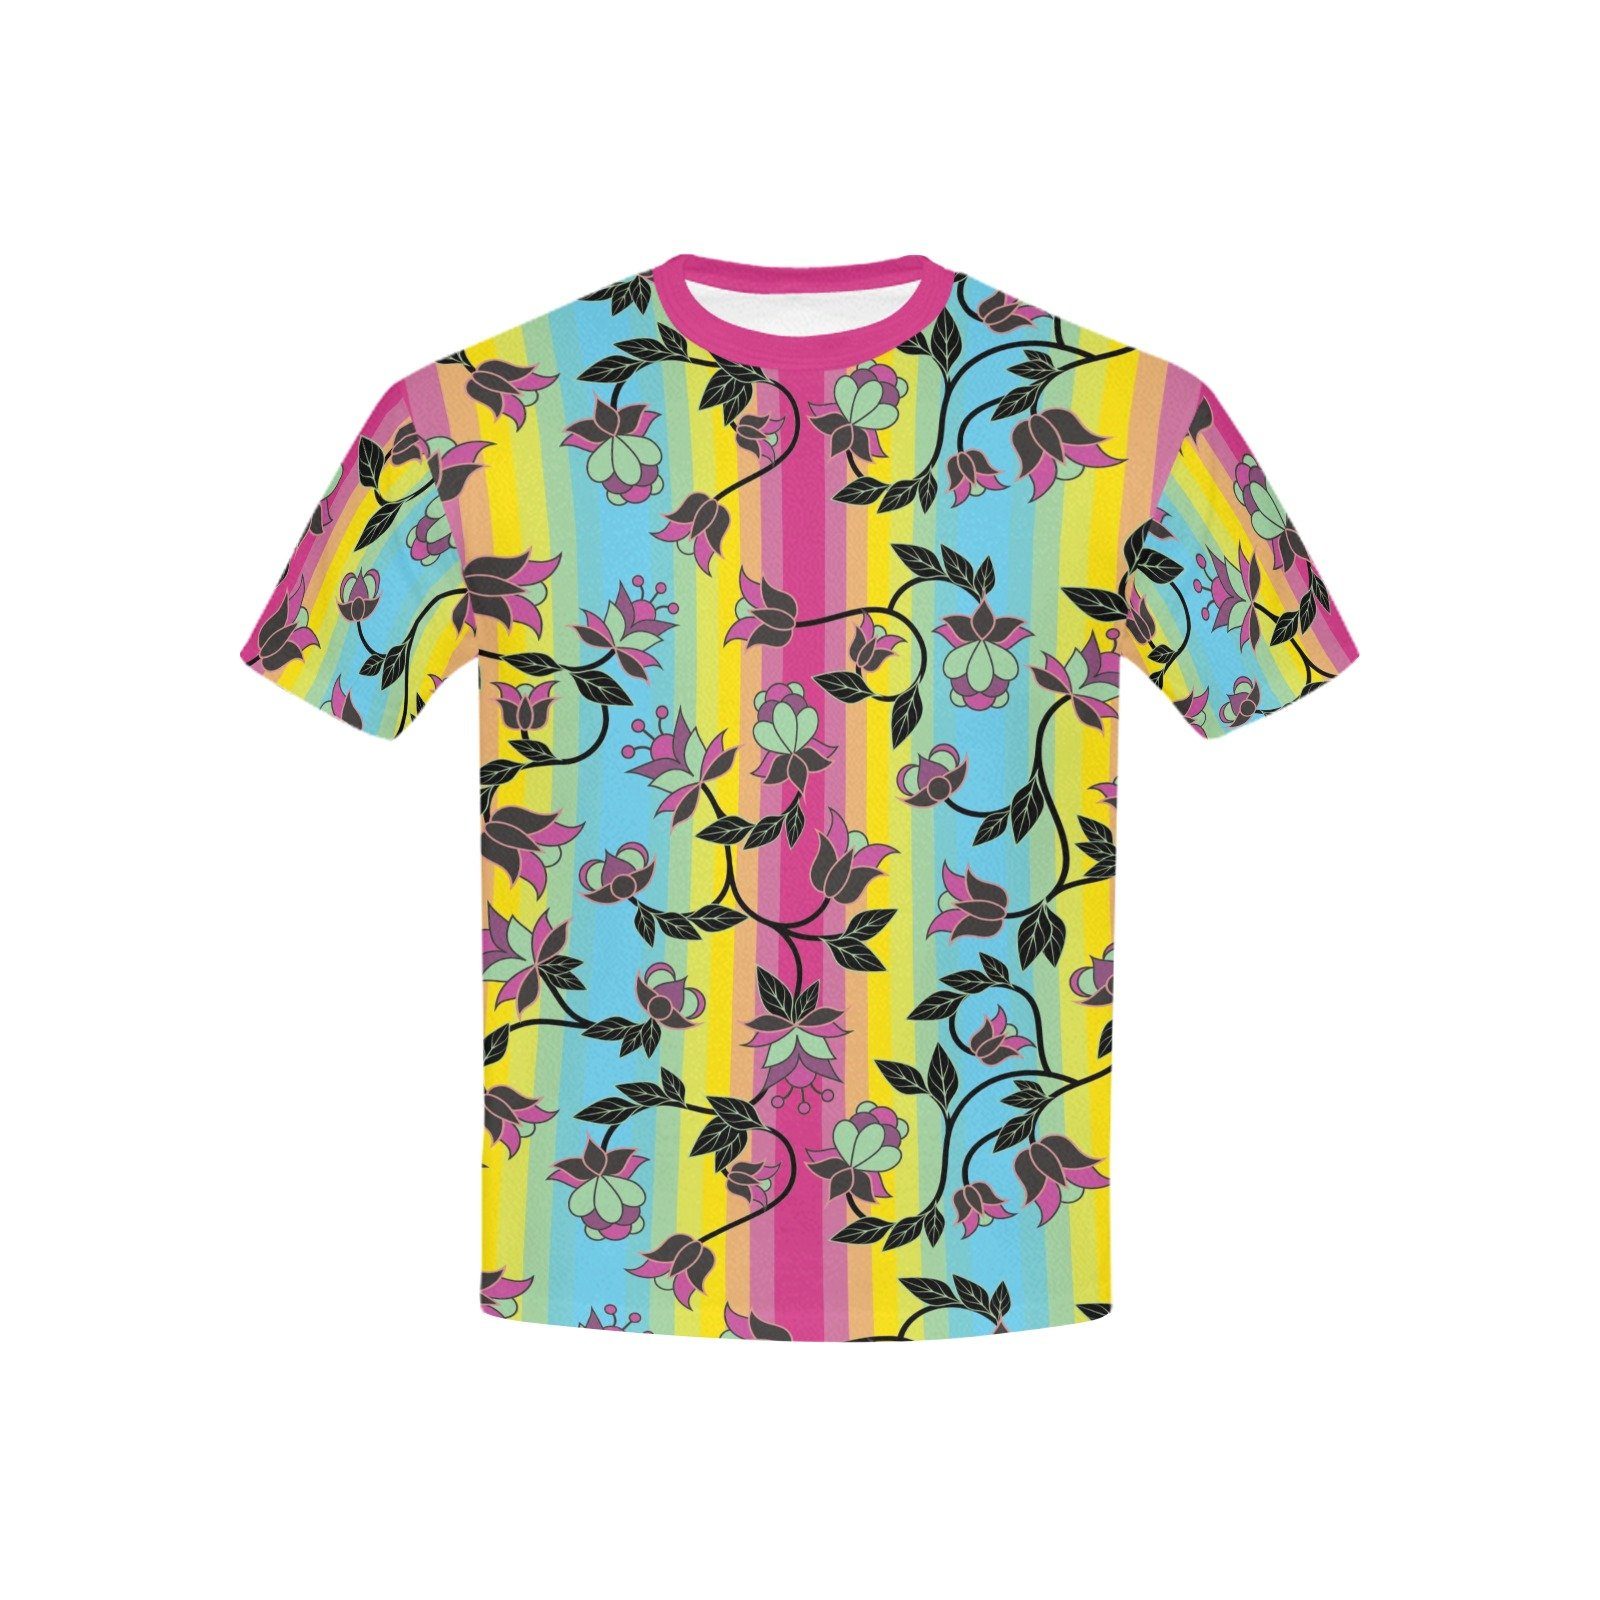 Powwow Carnival Kids' All Over Print T-shirt (USA Size) (Model T40) All Over Print T-shirt for Kid (T40) e-joyer 